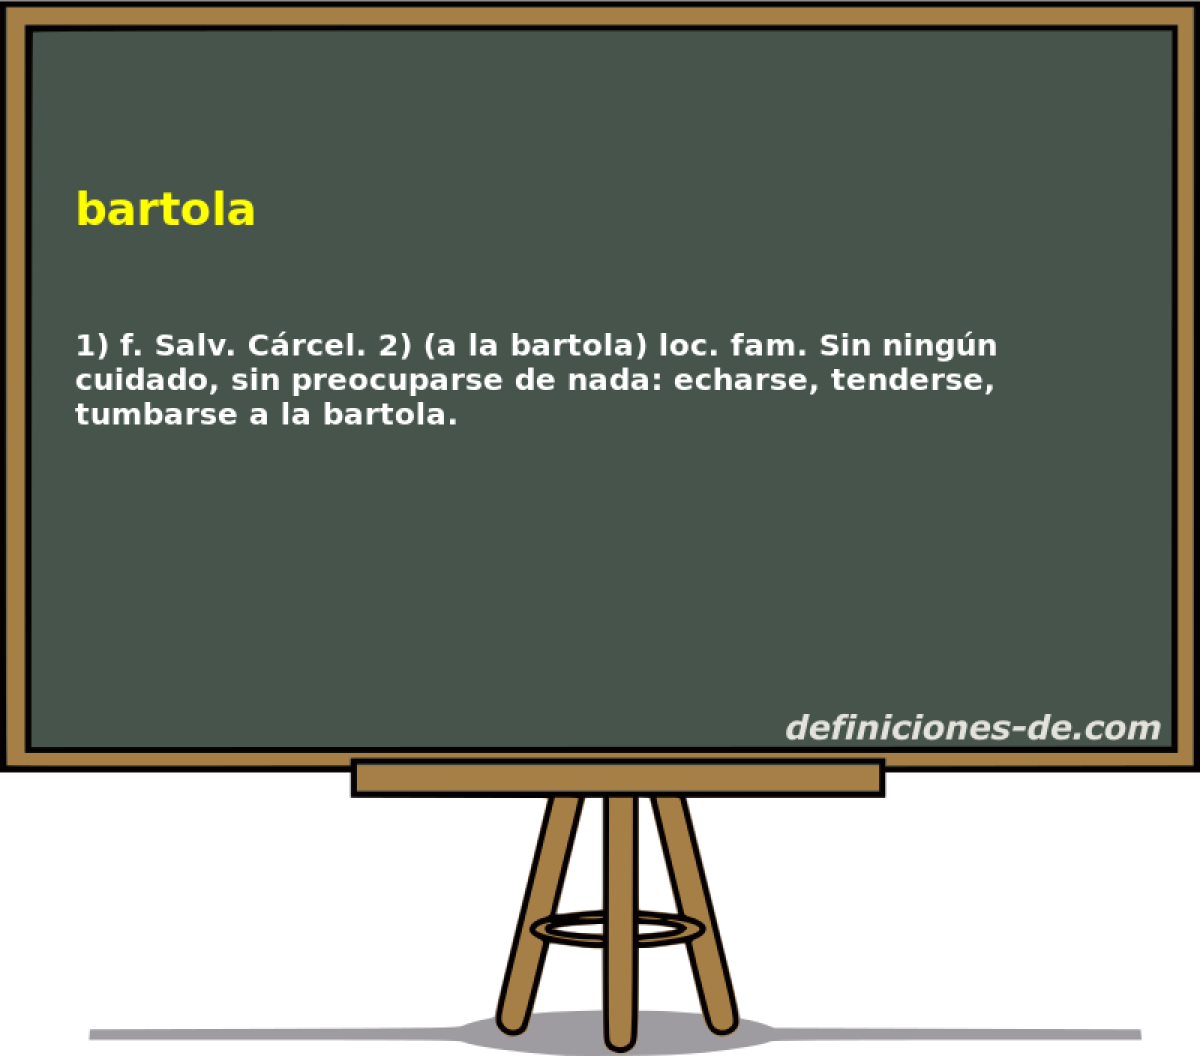 bartola 